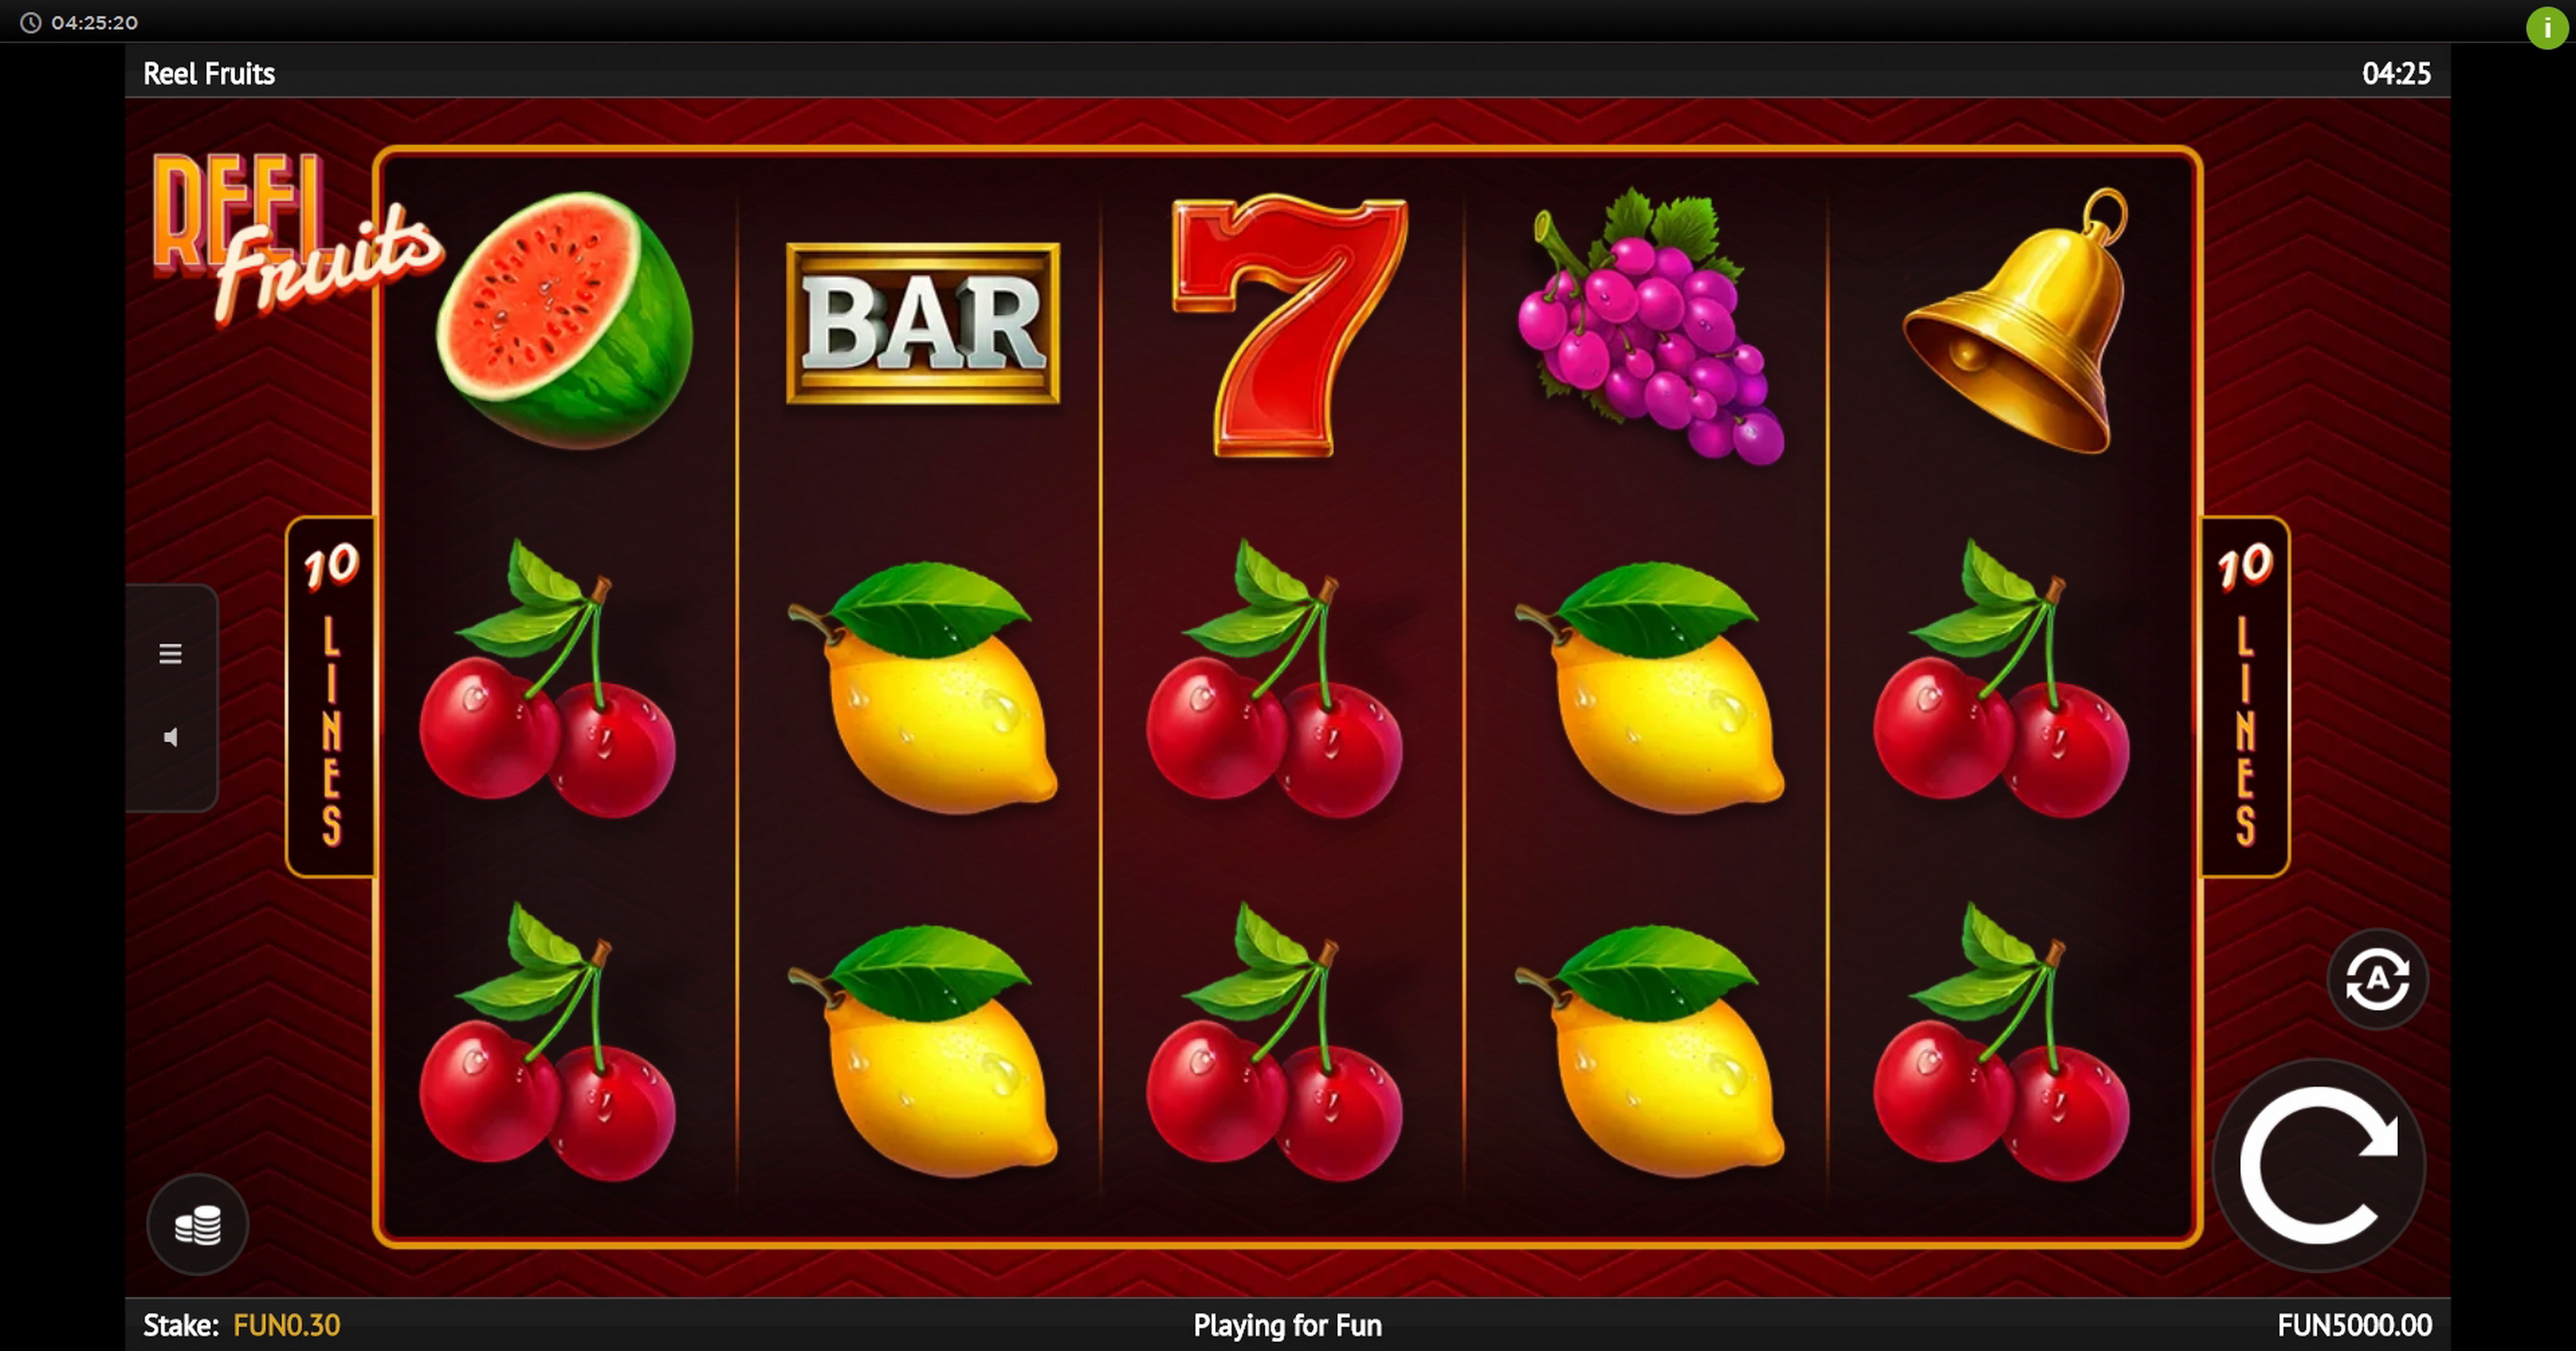 Reels in Reel Fruits! Slot Game by 1x2 Gaming